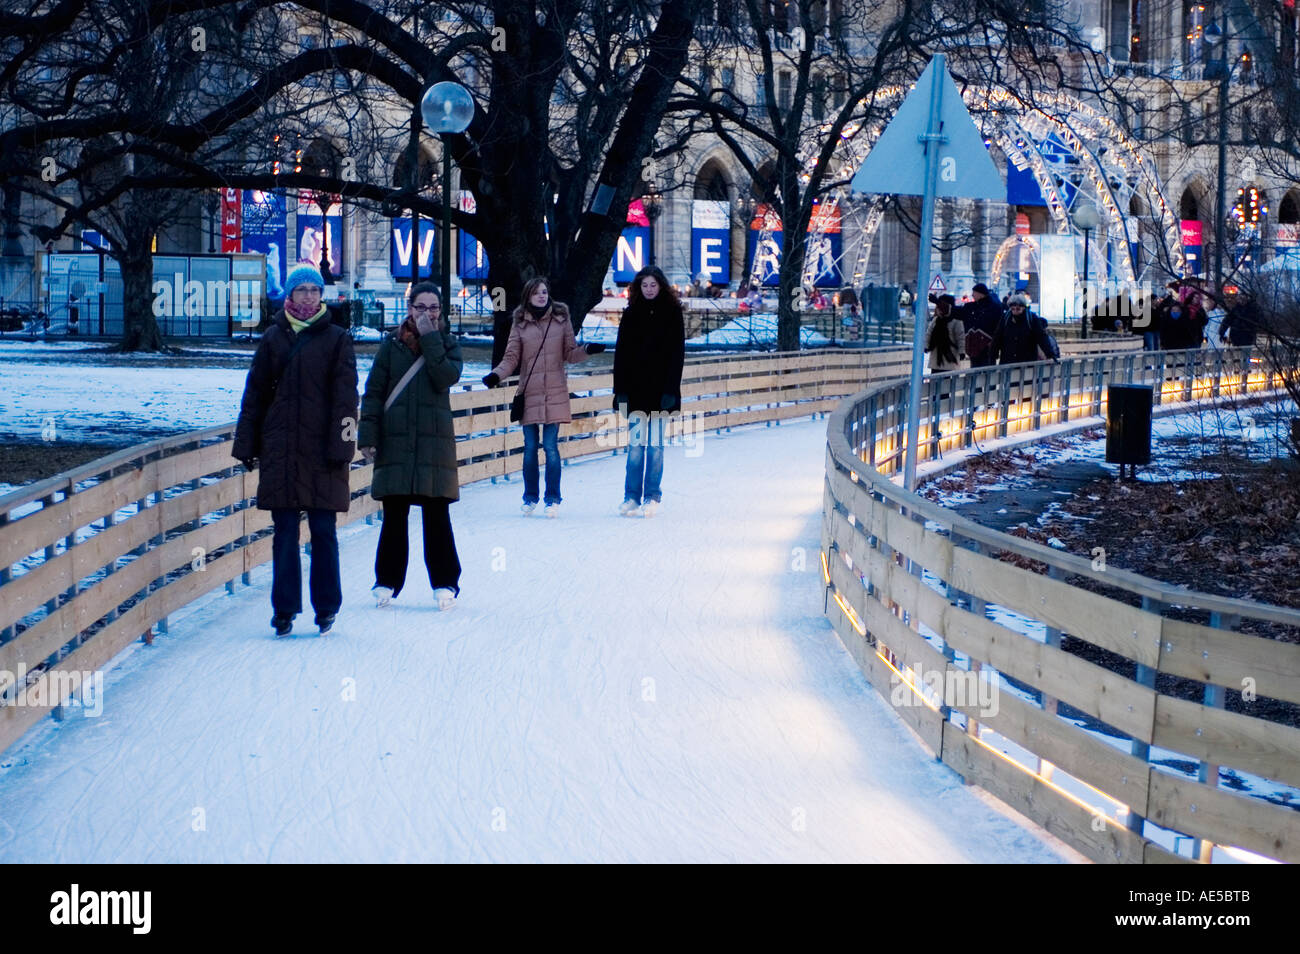 Österreich Wien Eislaufen auf dem Rathaus-Platz Stockfotografie - Alamy